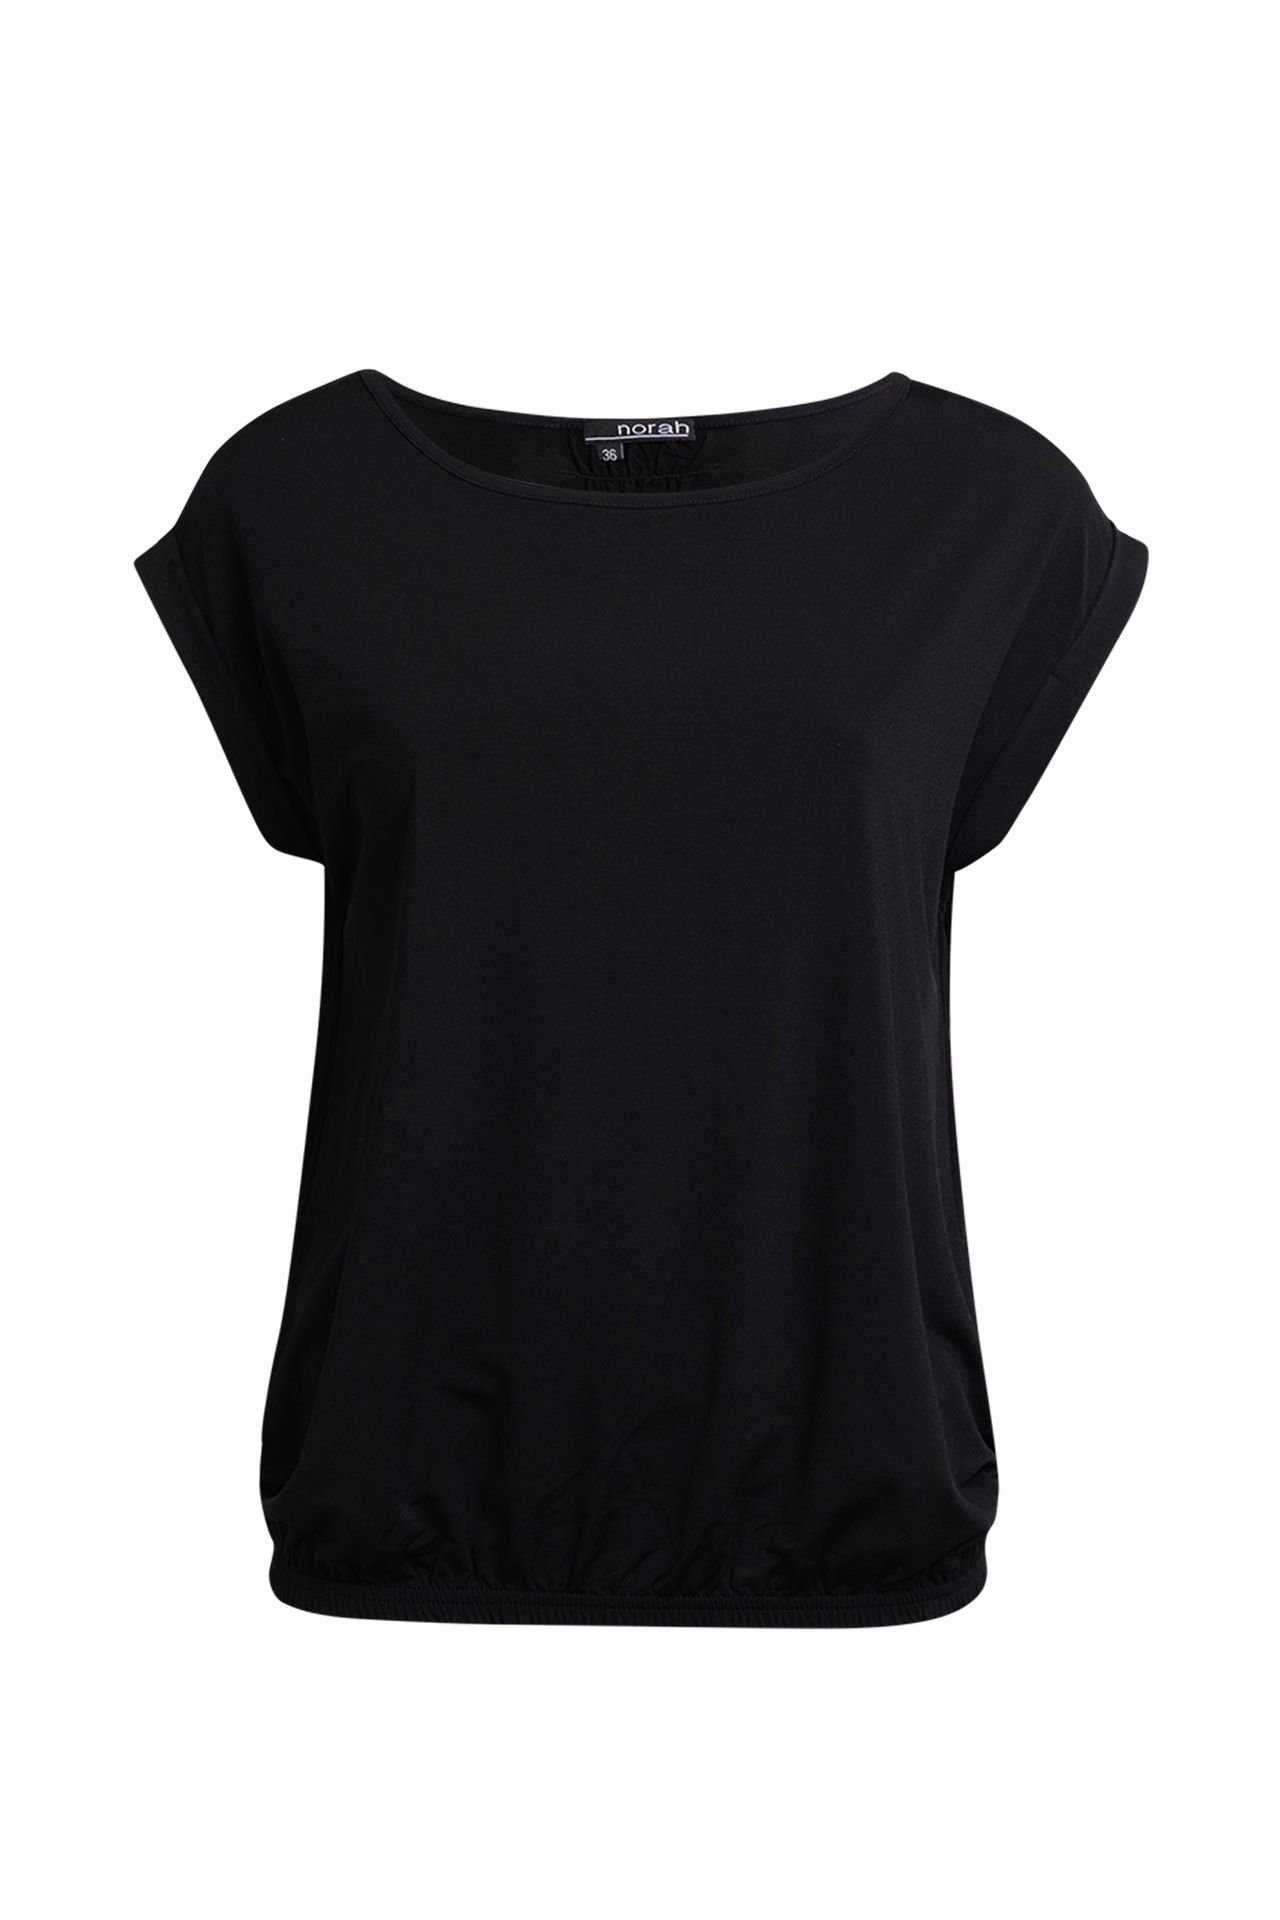 Norah Shirt, N1221 black 210284-001